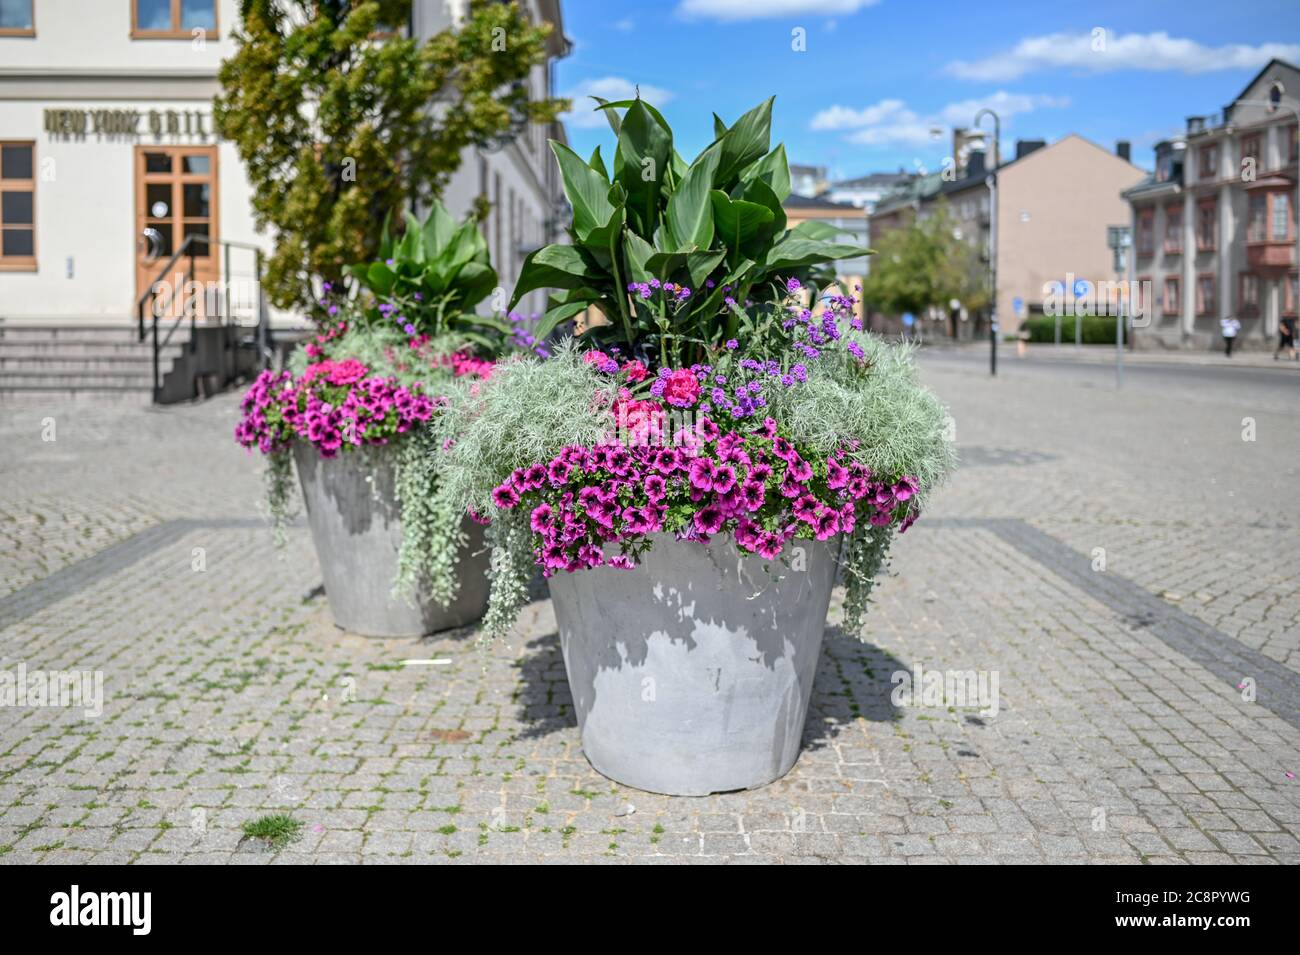 Décorations florales sur la place Old à Norrkoping. Norrkoping est une ville industrielle historique de Suède. Banque D'Images